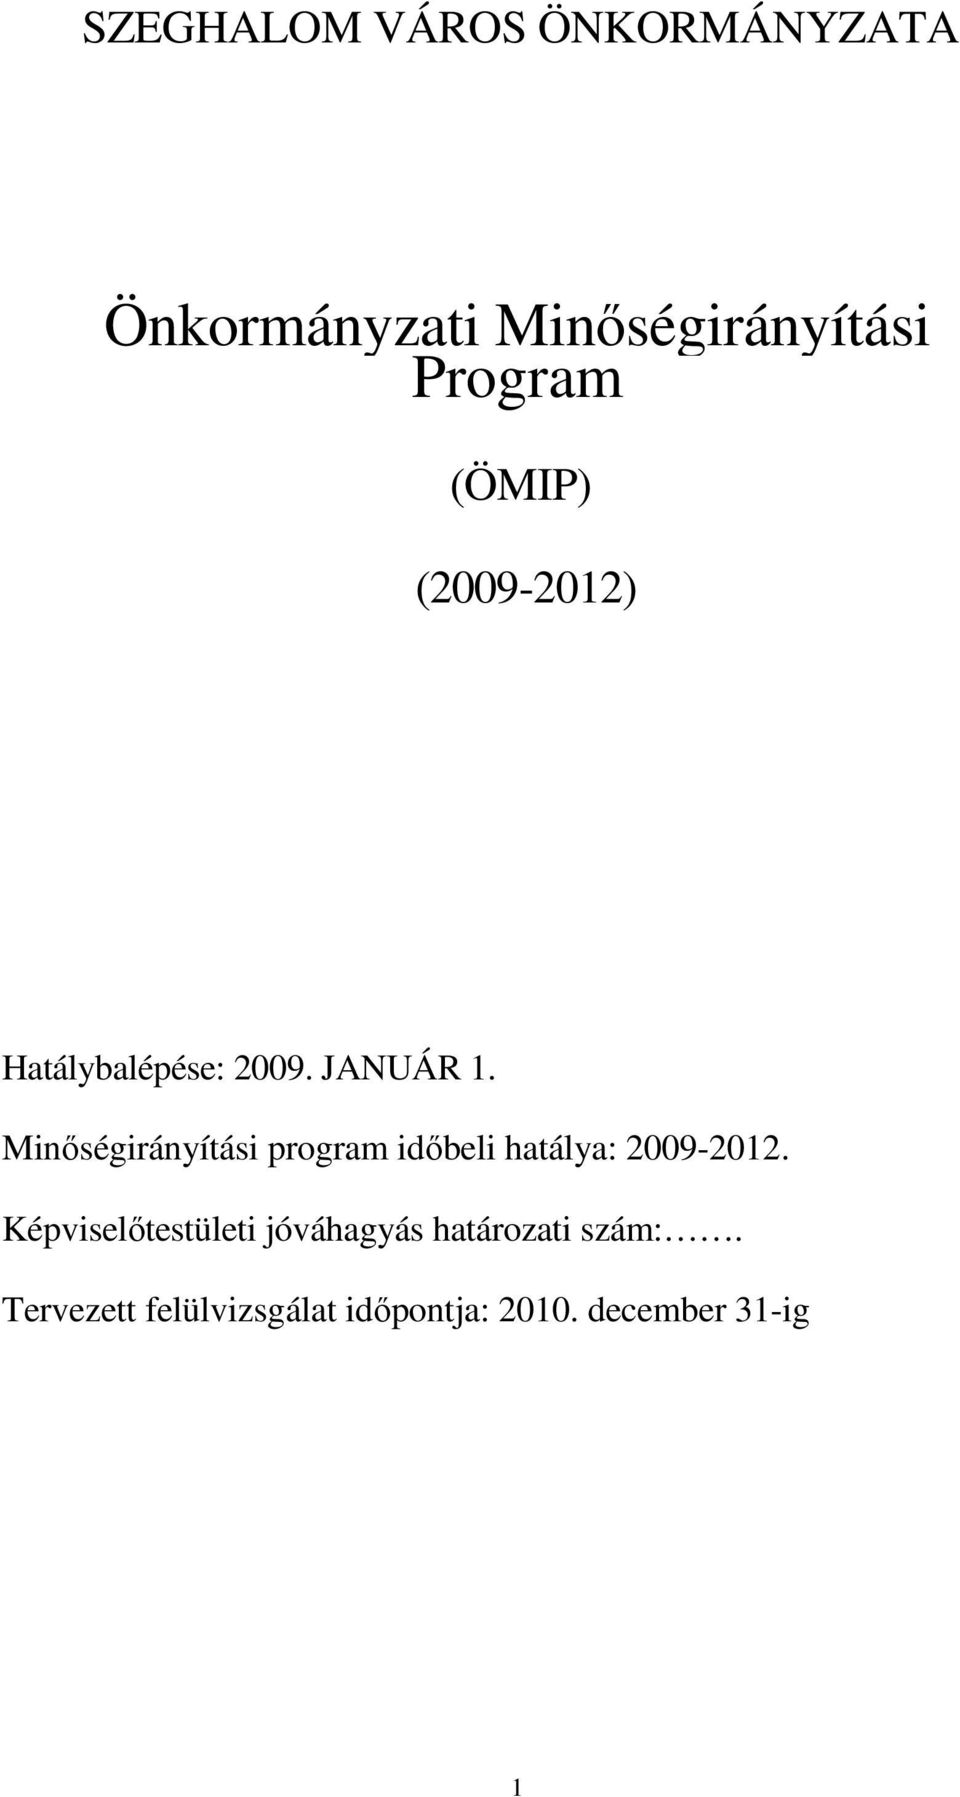 Minıségirányítási program idıbeli hatálya: 2009-2012.